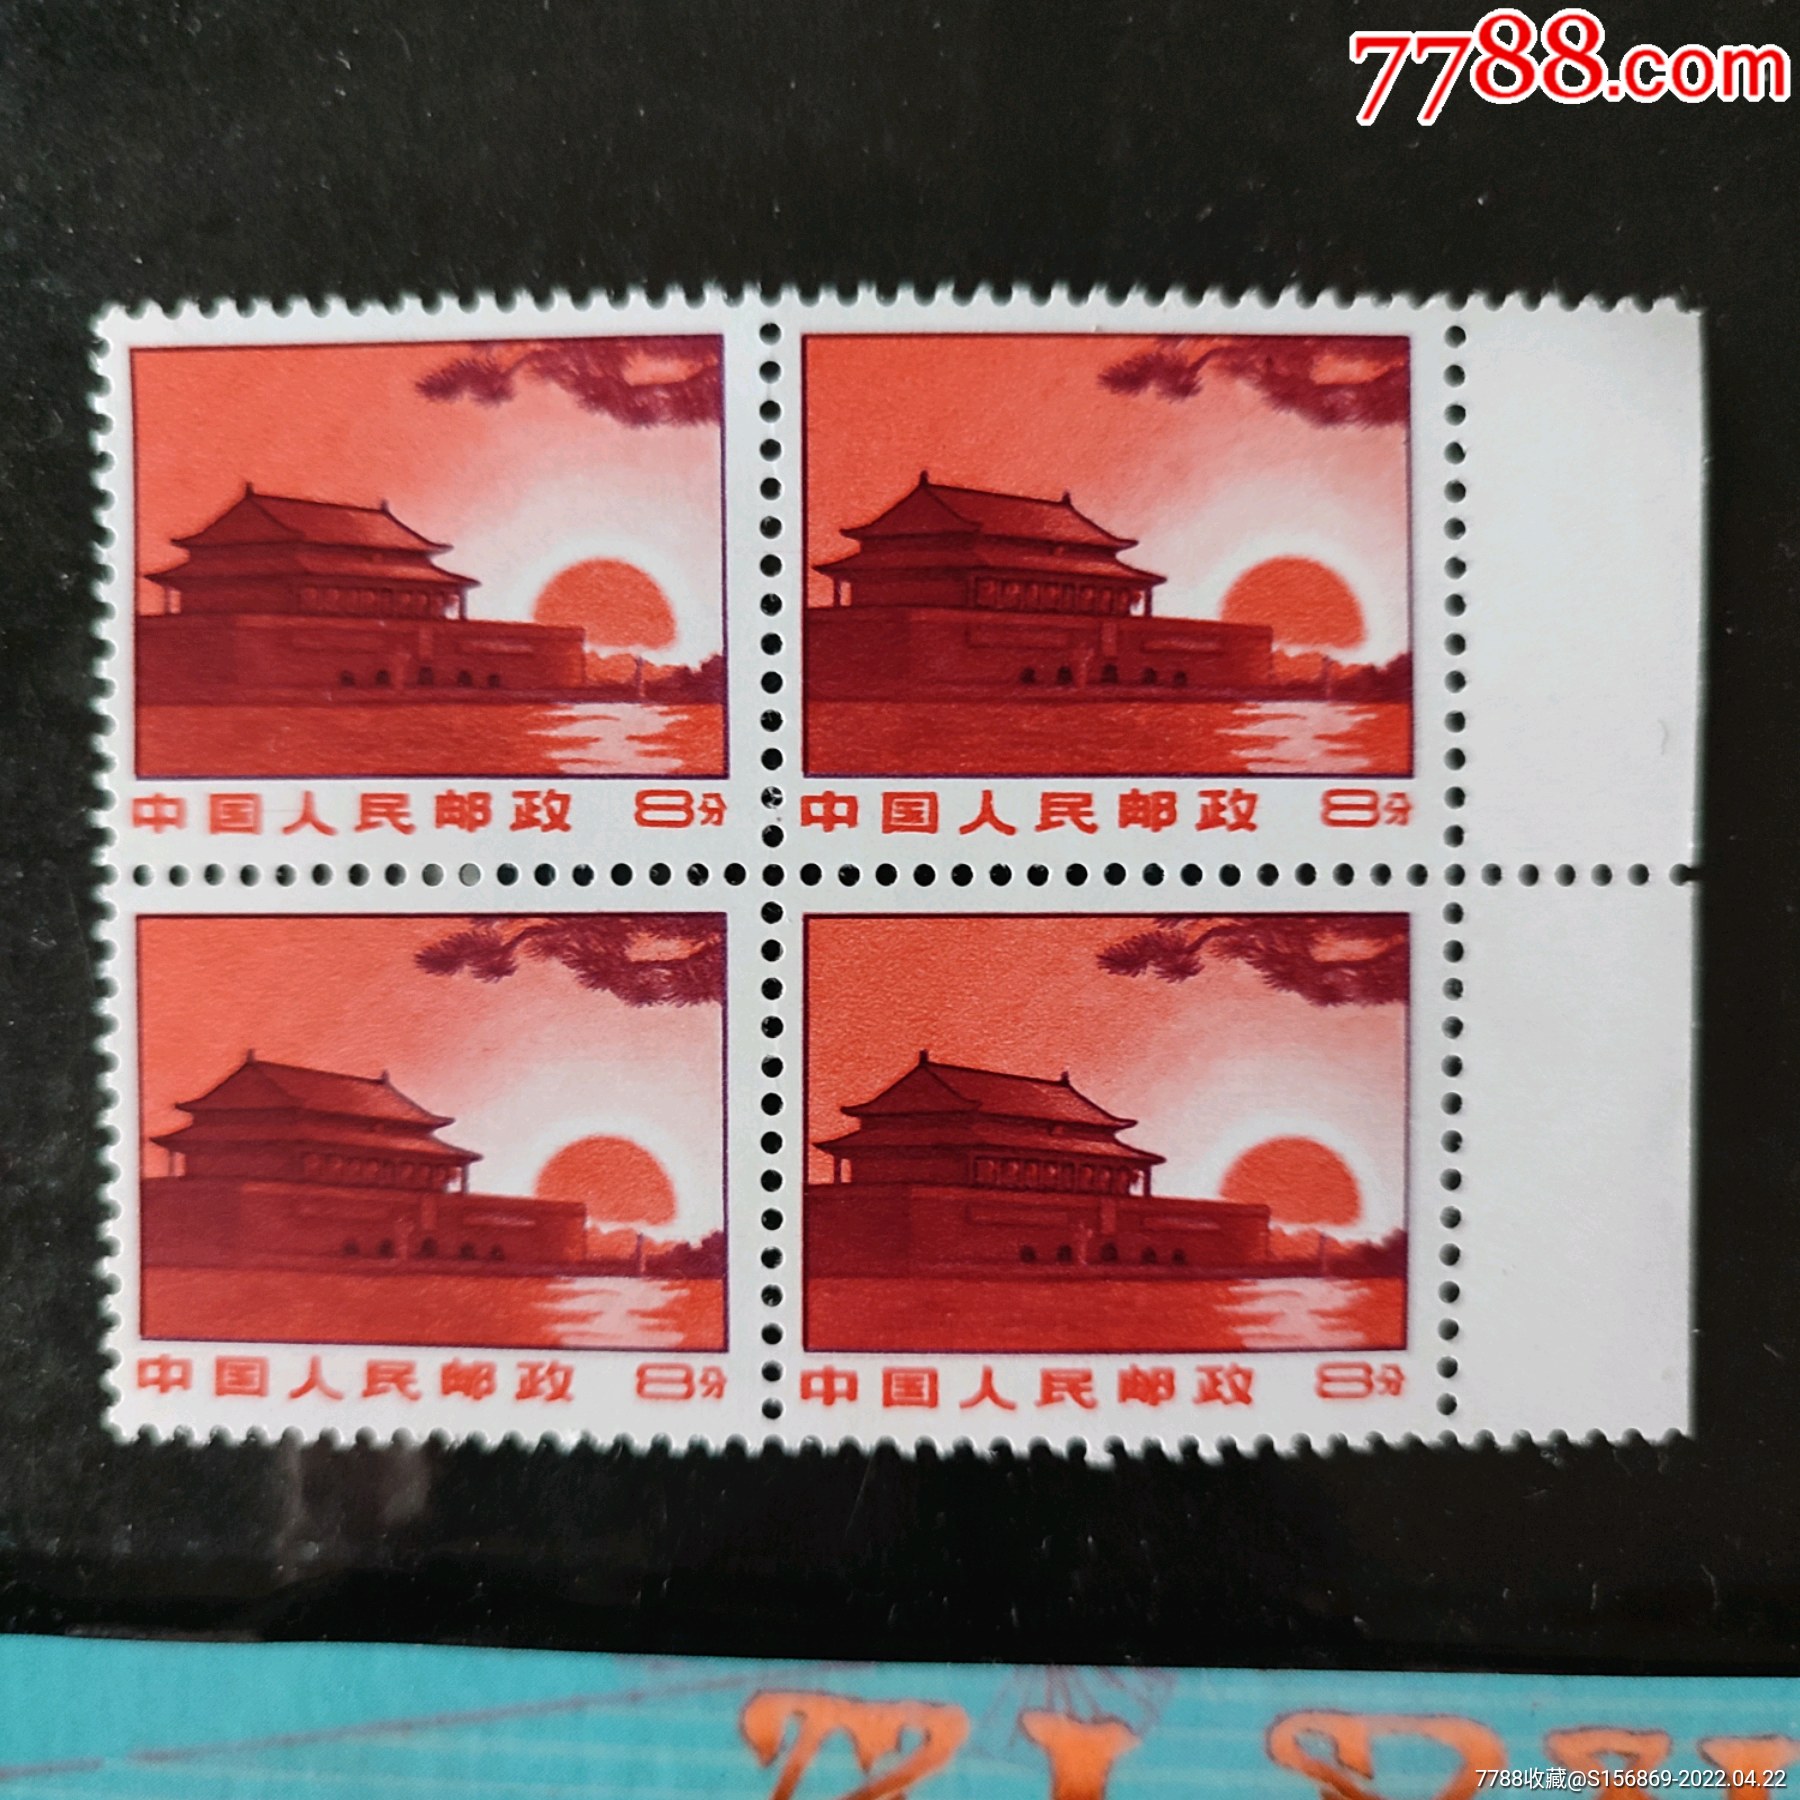 一枚邮票罕见图片